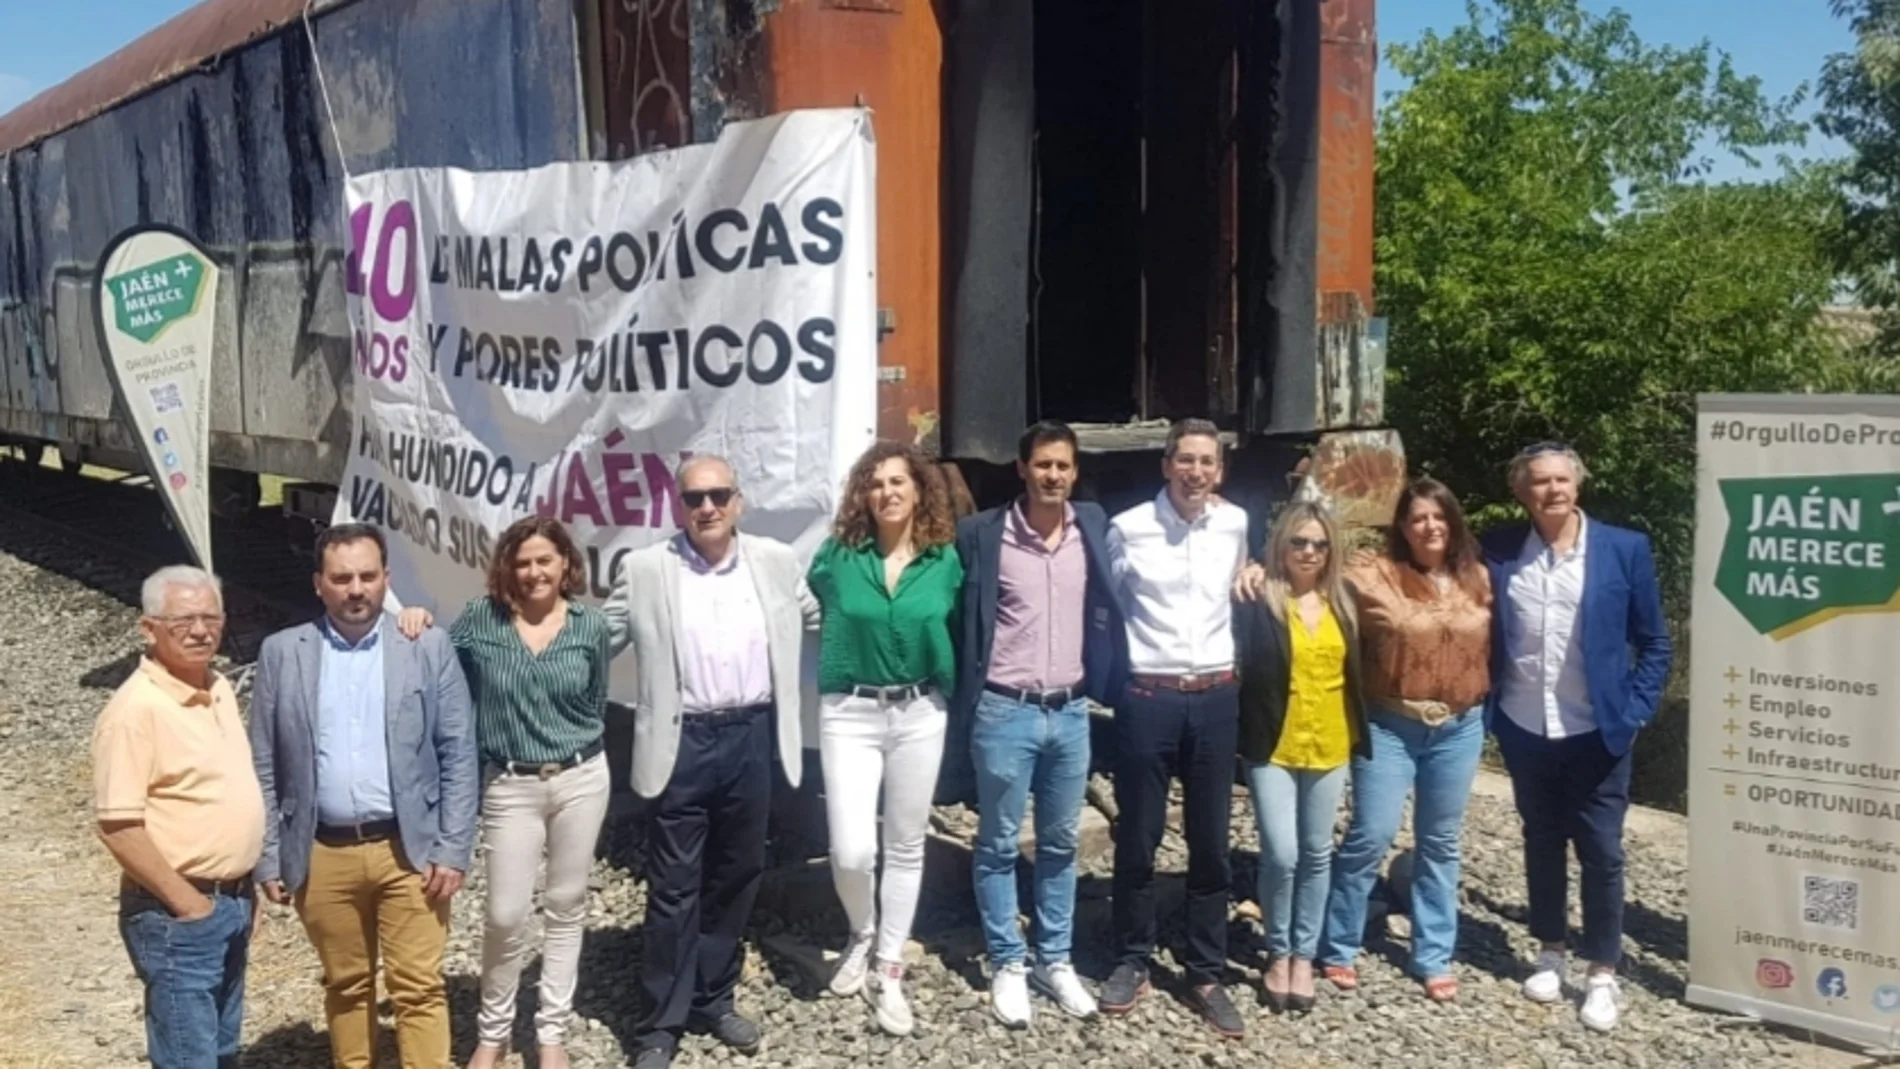 Lista de personas que se presentan a las elecciones andaluzas por Jaén Merece Más